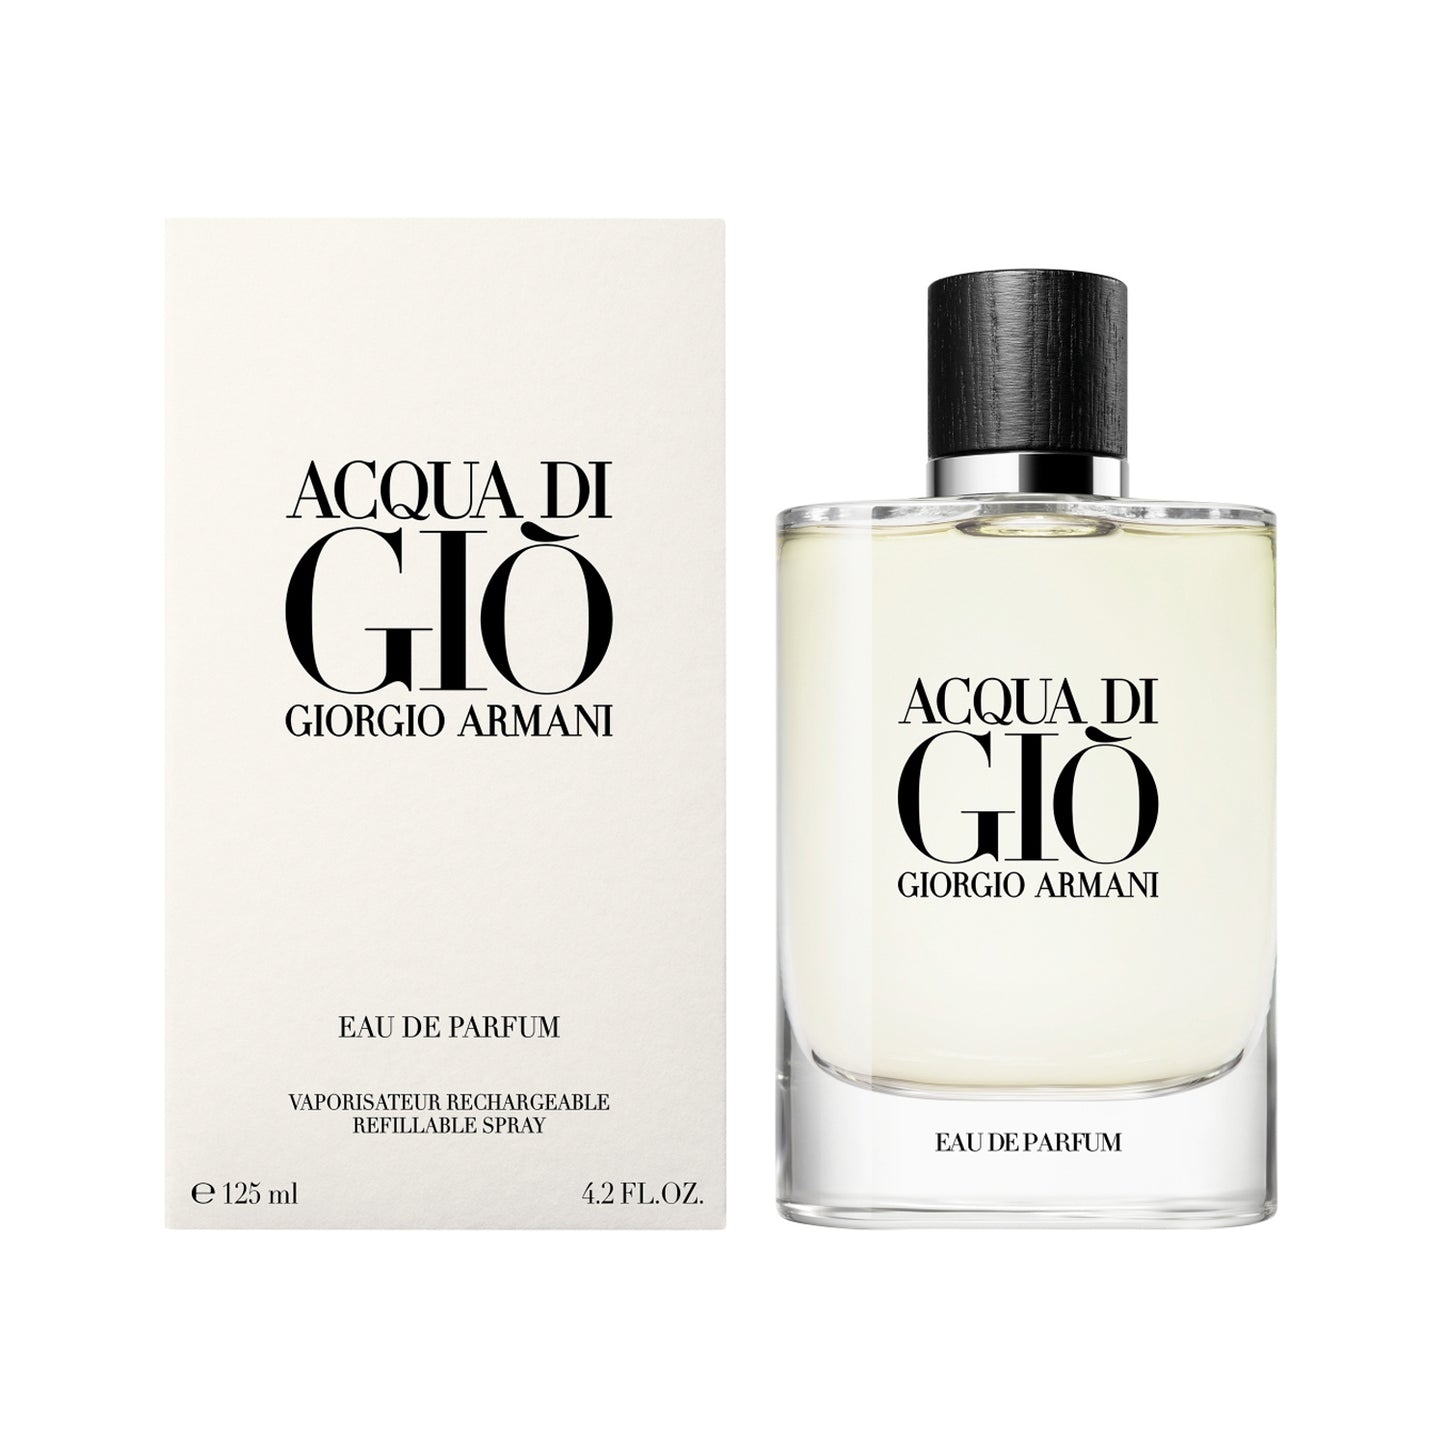 Giorgio Armani Acqua Di Gio Eau De Parfum (125ml)